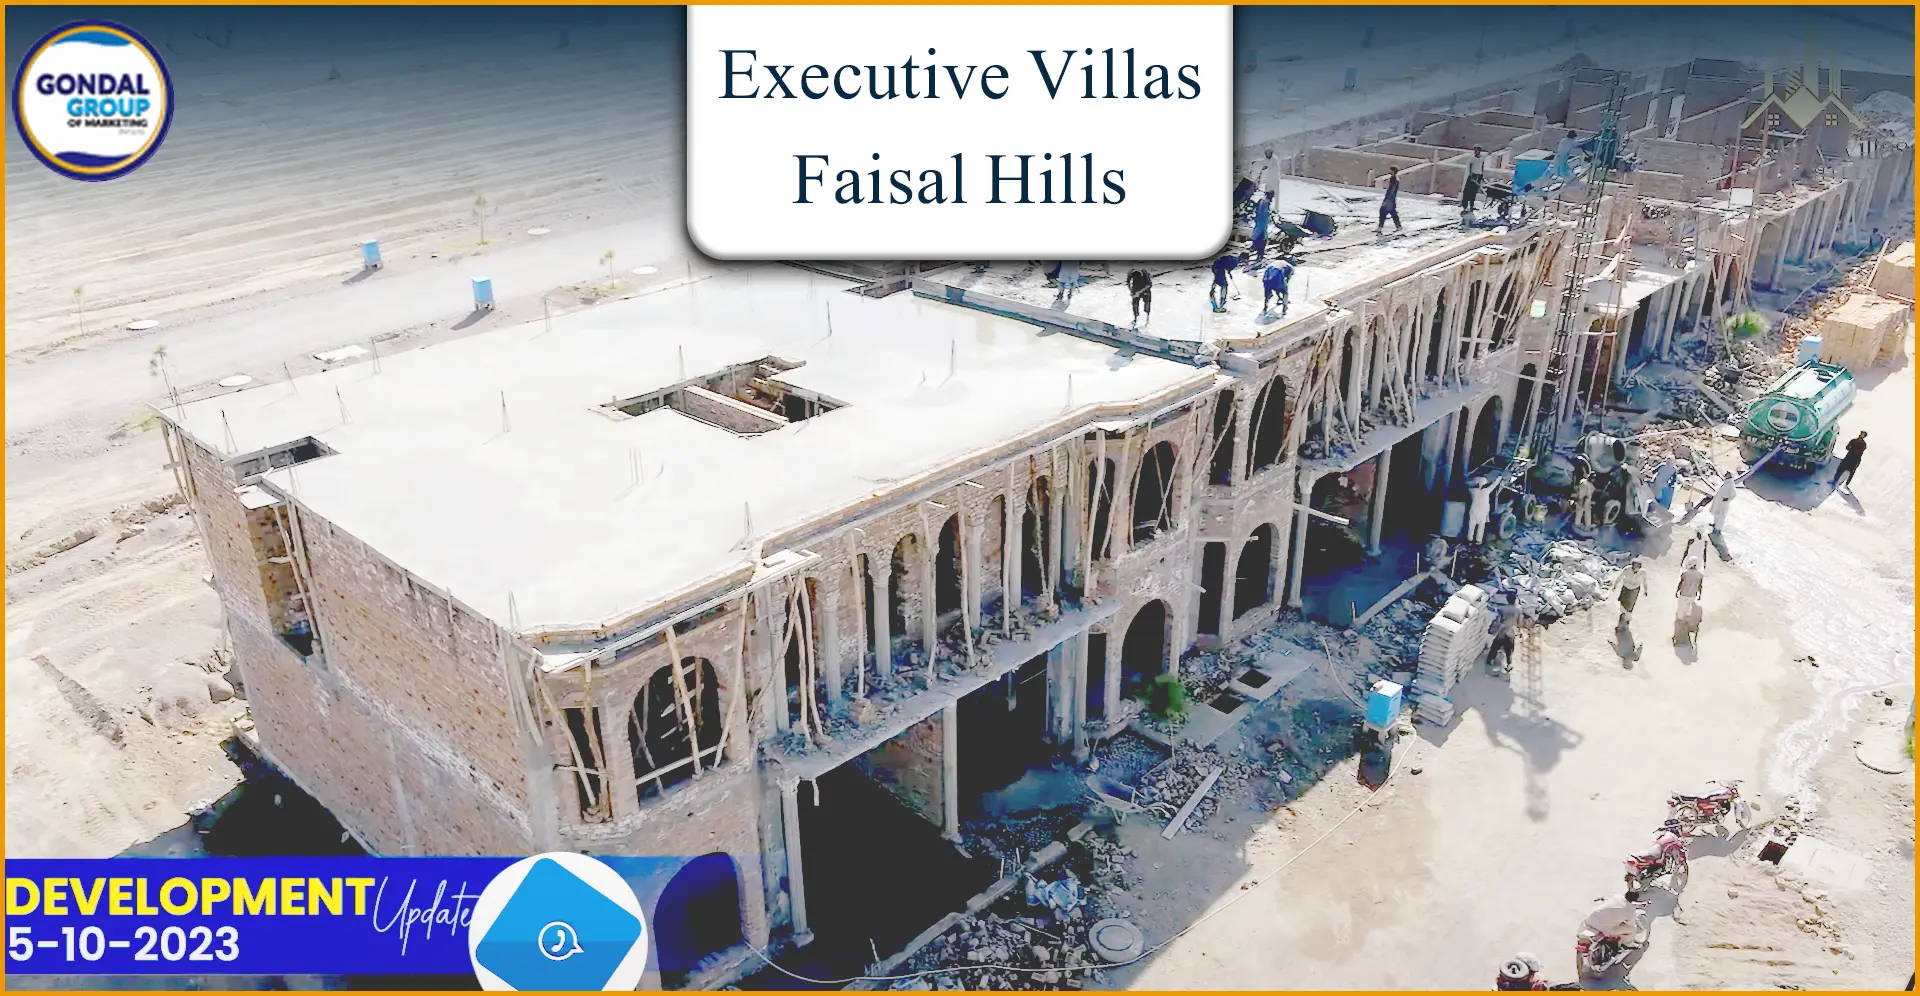 Executive villas Faisal hillsExecutive villas Faisal hills